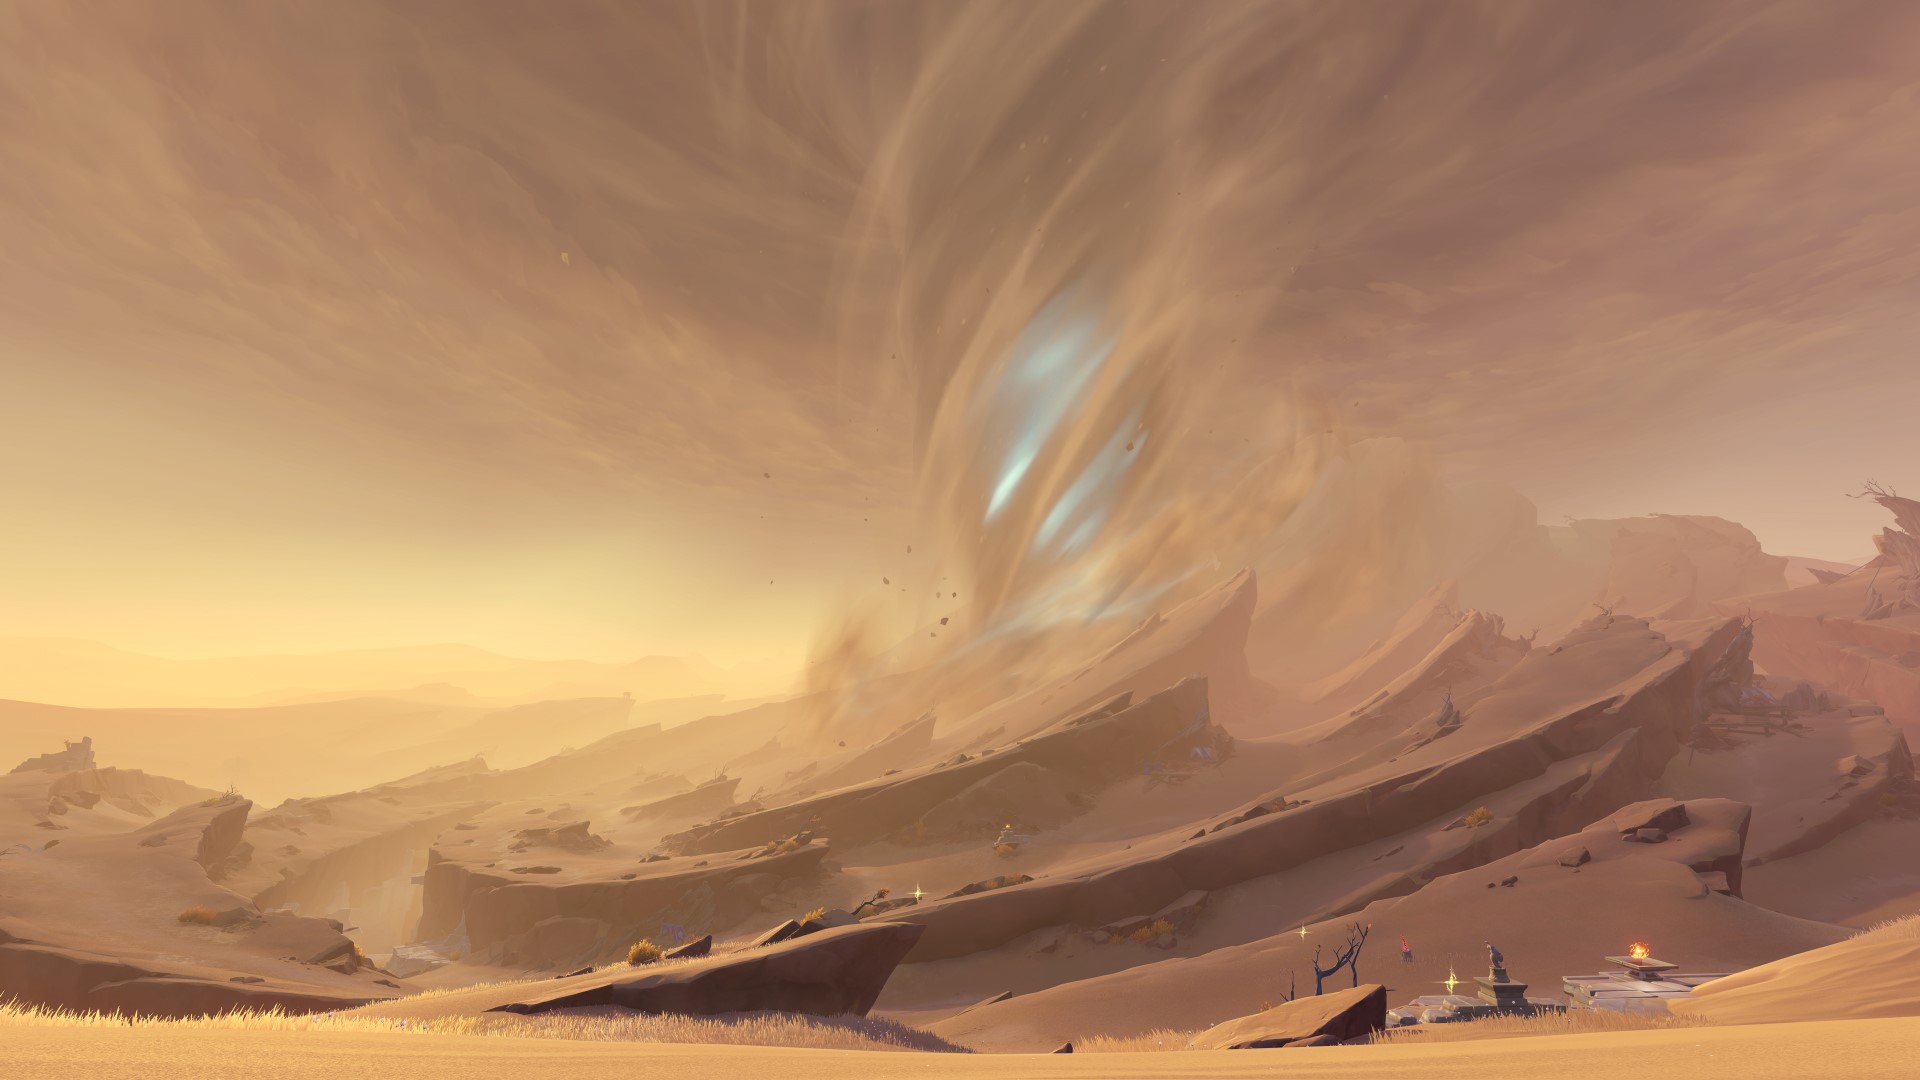 Genshin Impact 3.4 - the sandstorm in the desert